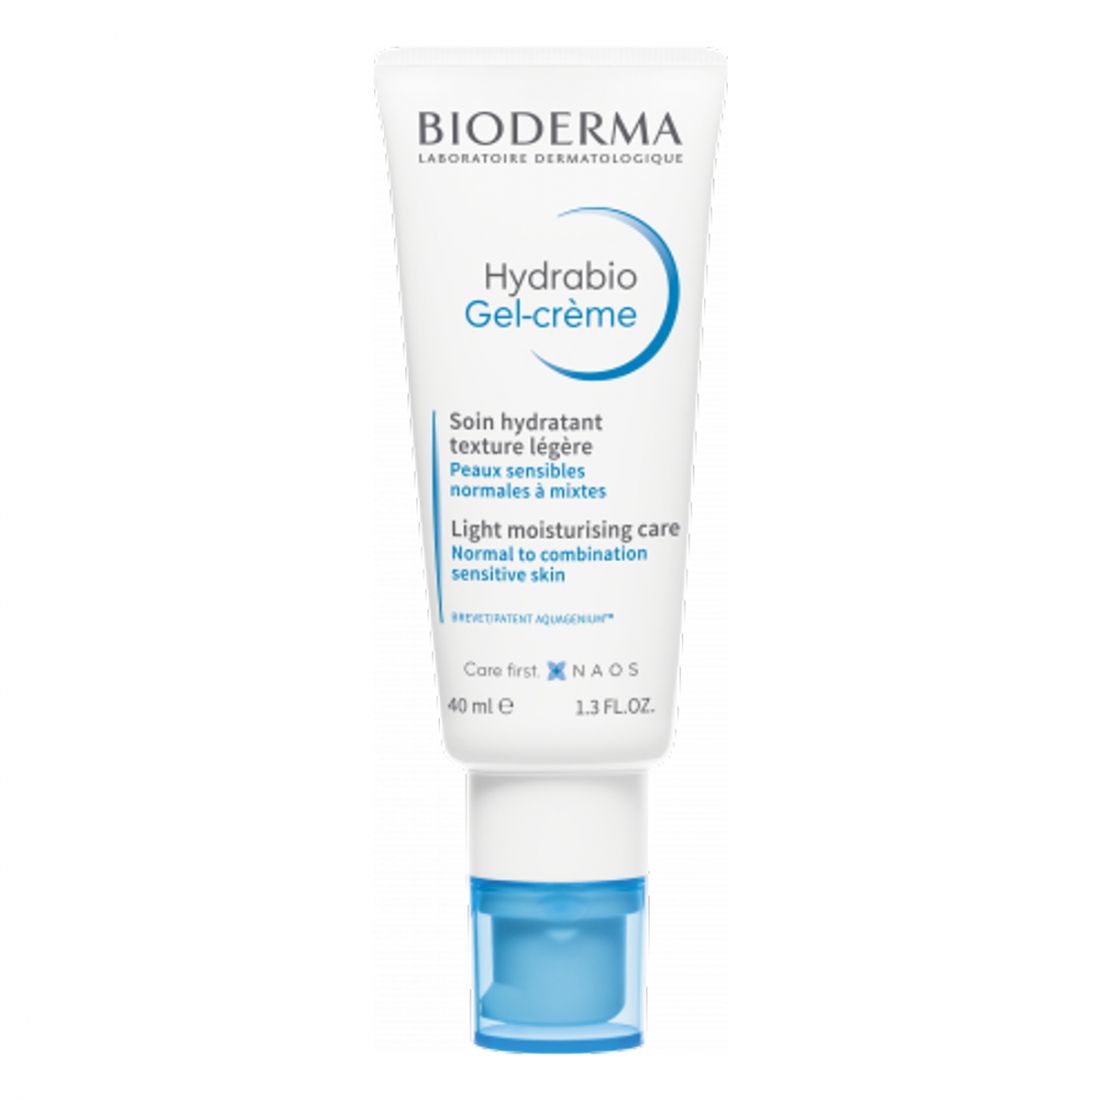 Bioderma - Gel-crème 'Hydrabio' - 40 ml